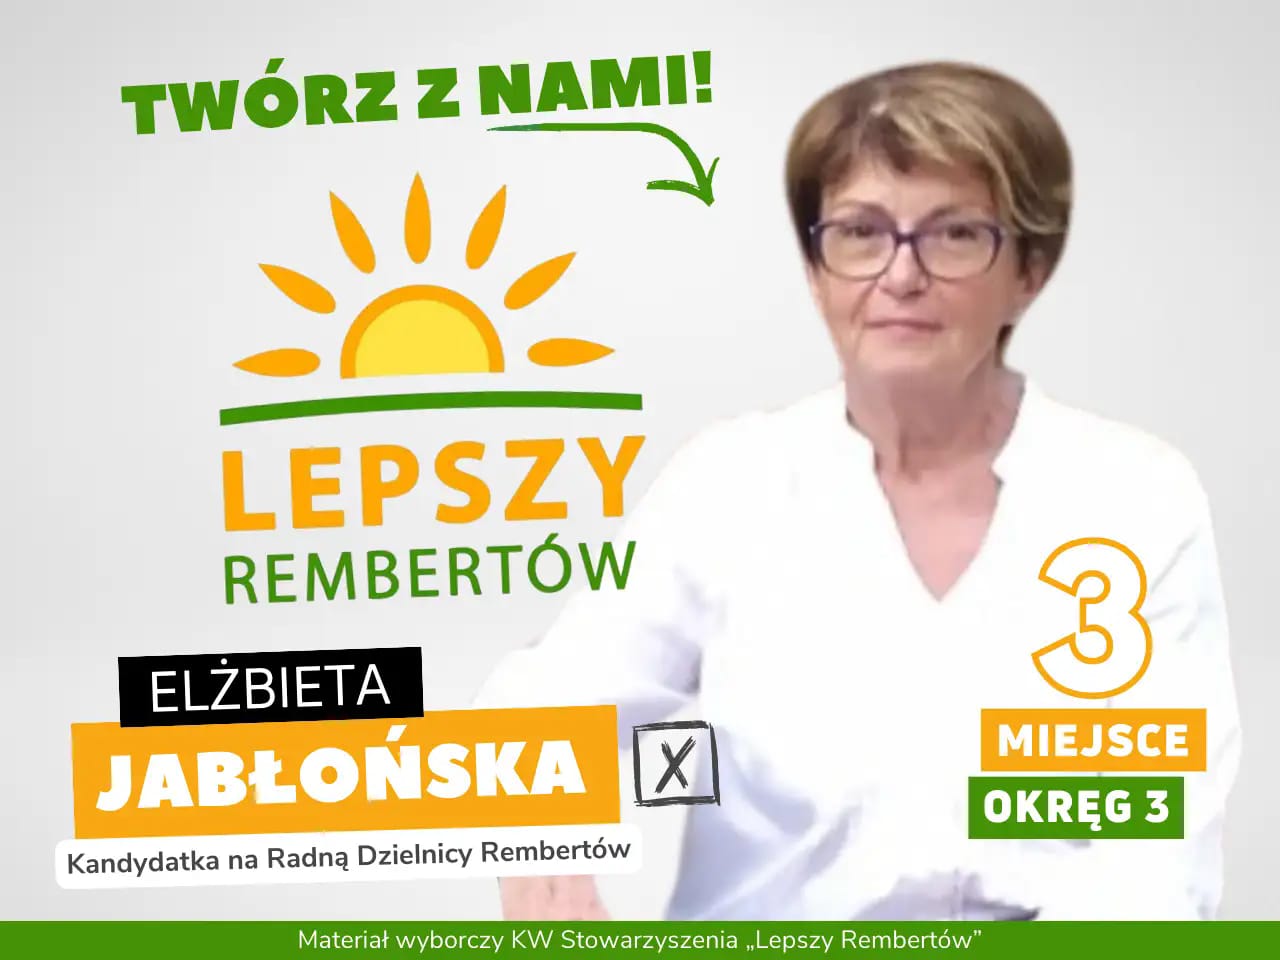 Elżbieta Jabłońska Okręg 3 miejsce 3